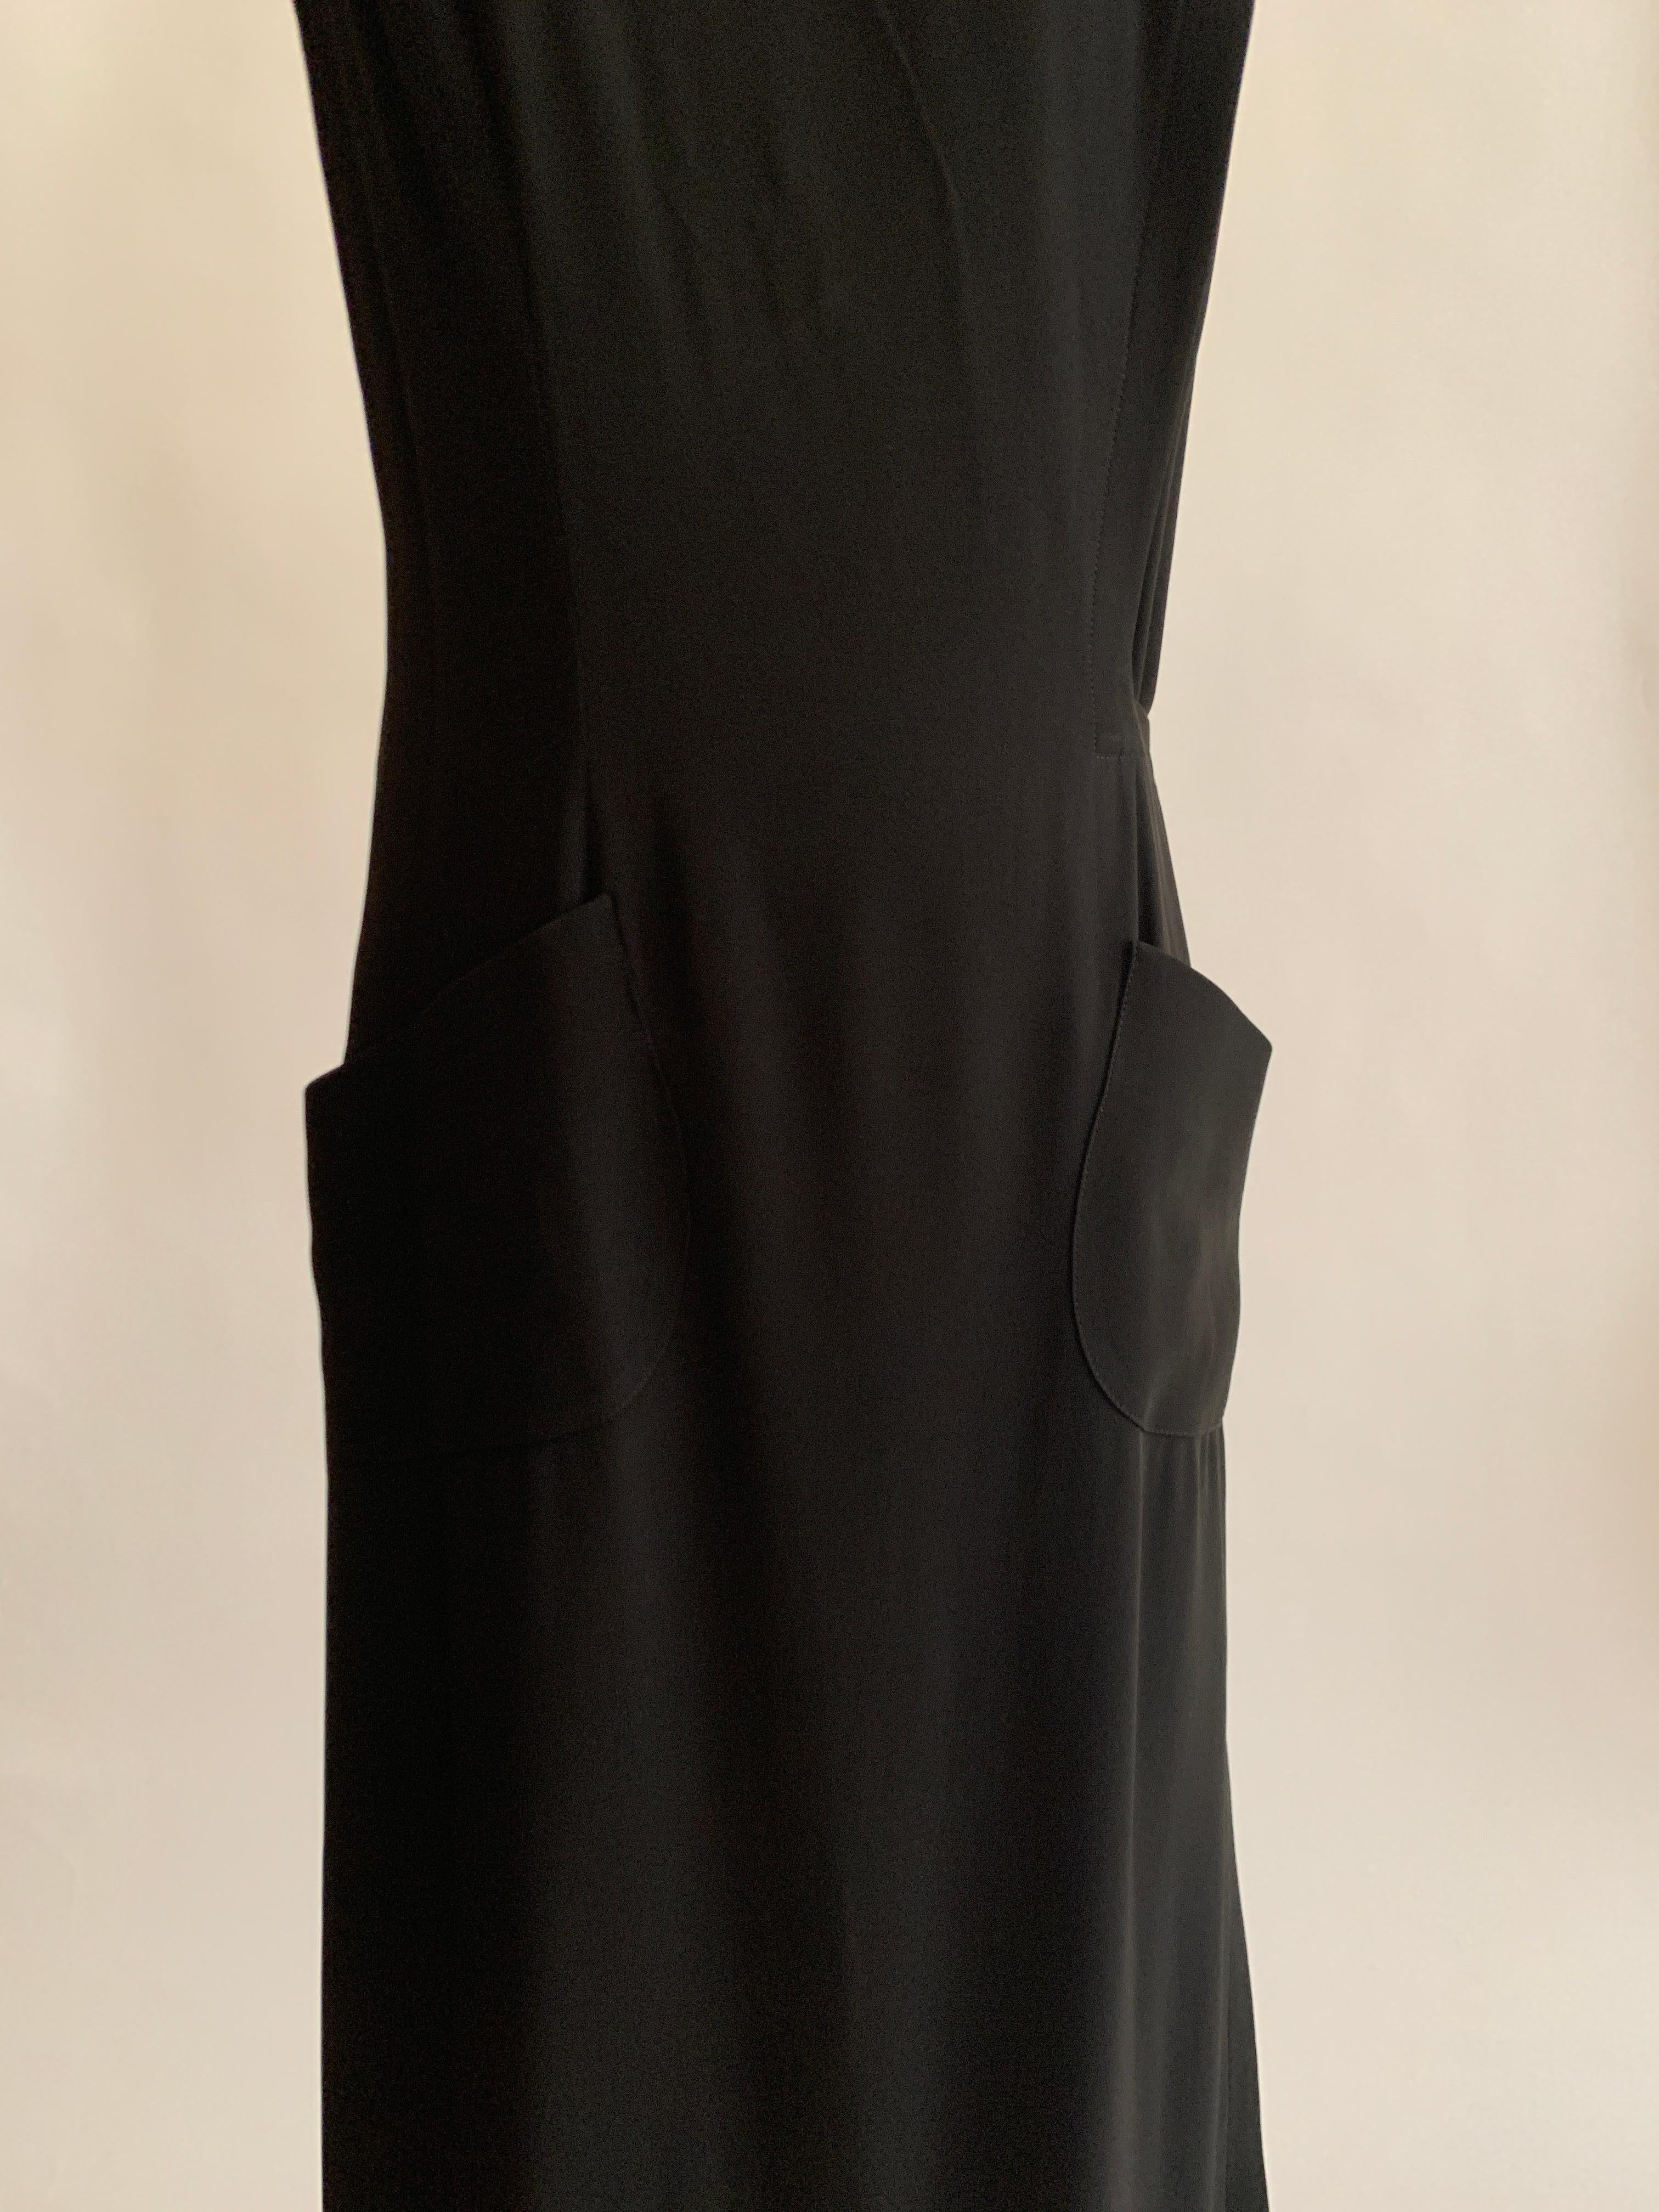 Women's Christian Lacroix 1990s Black Gold Accent Pocket Front Maxi Wrap Dress Gown For Sale